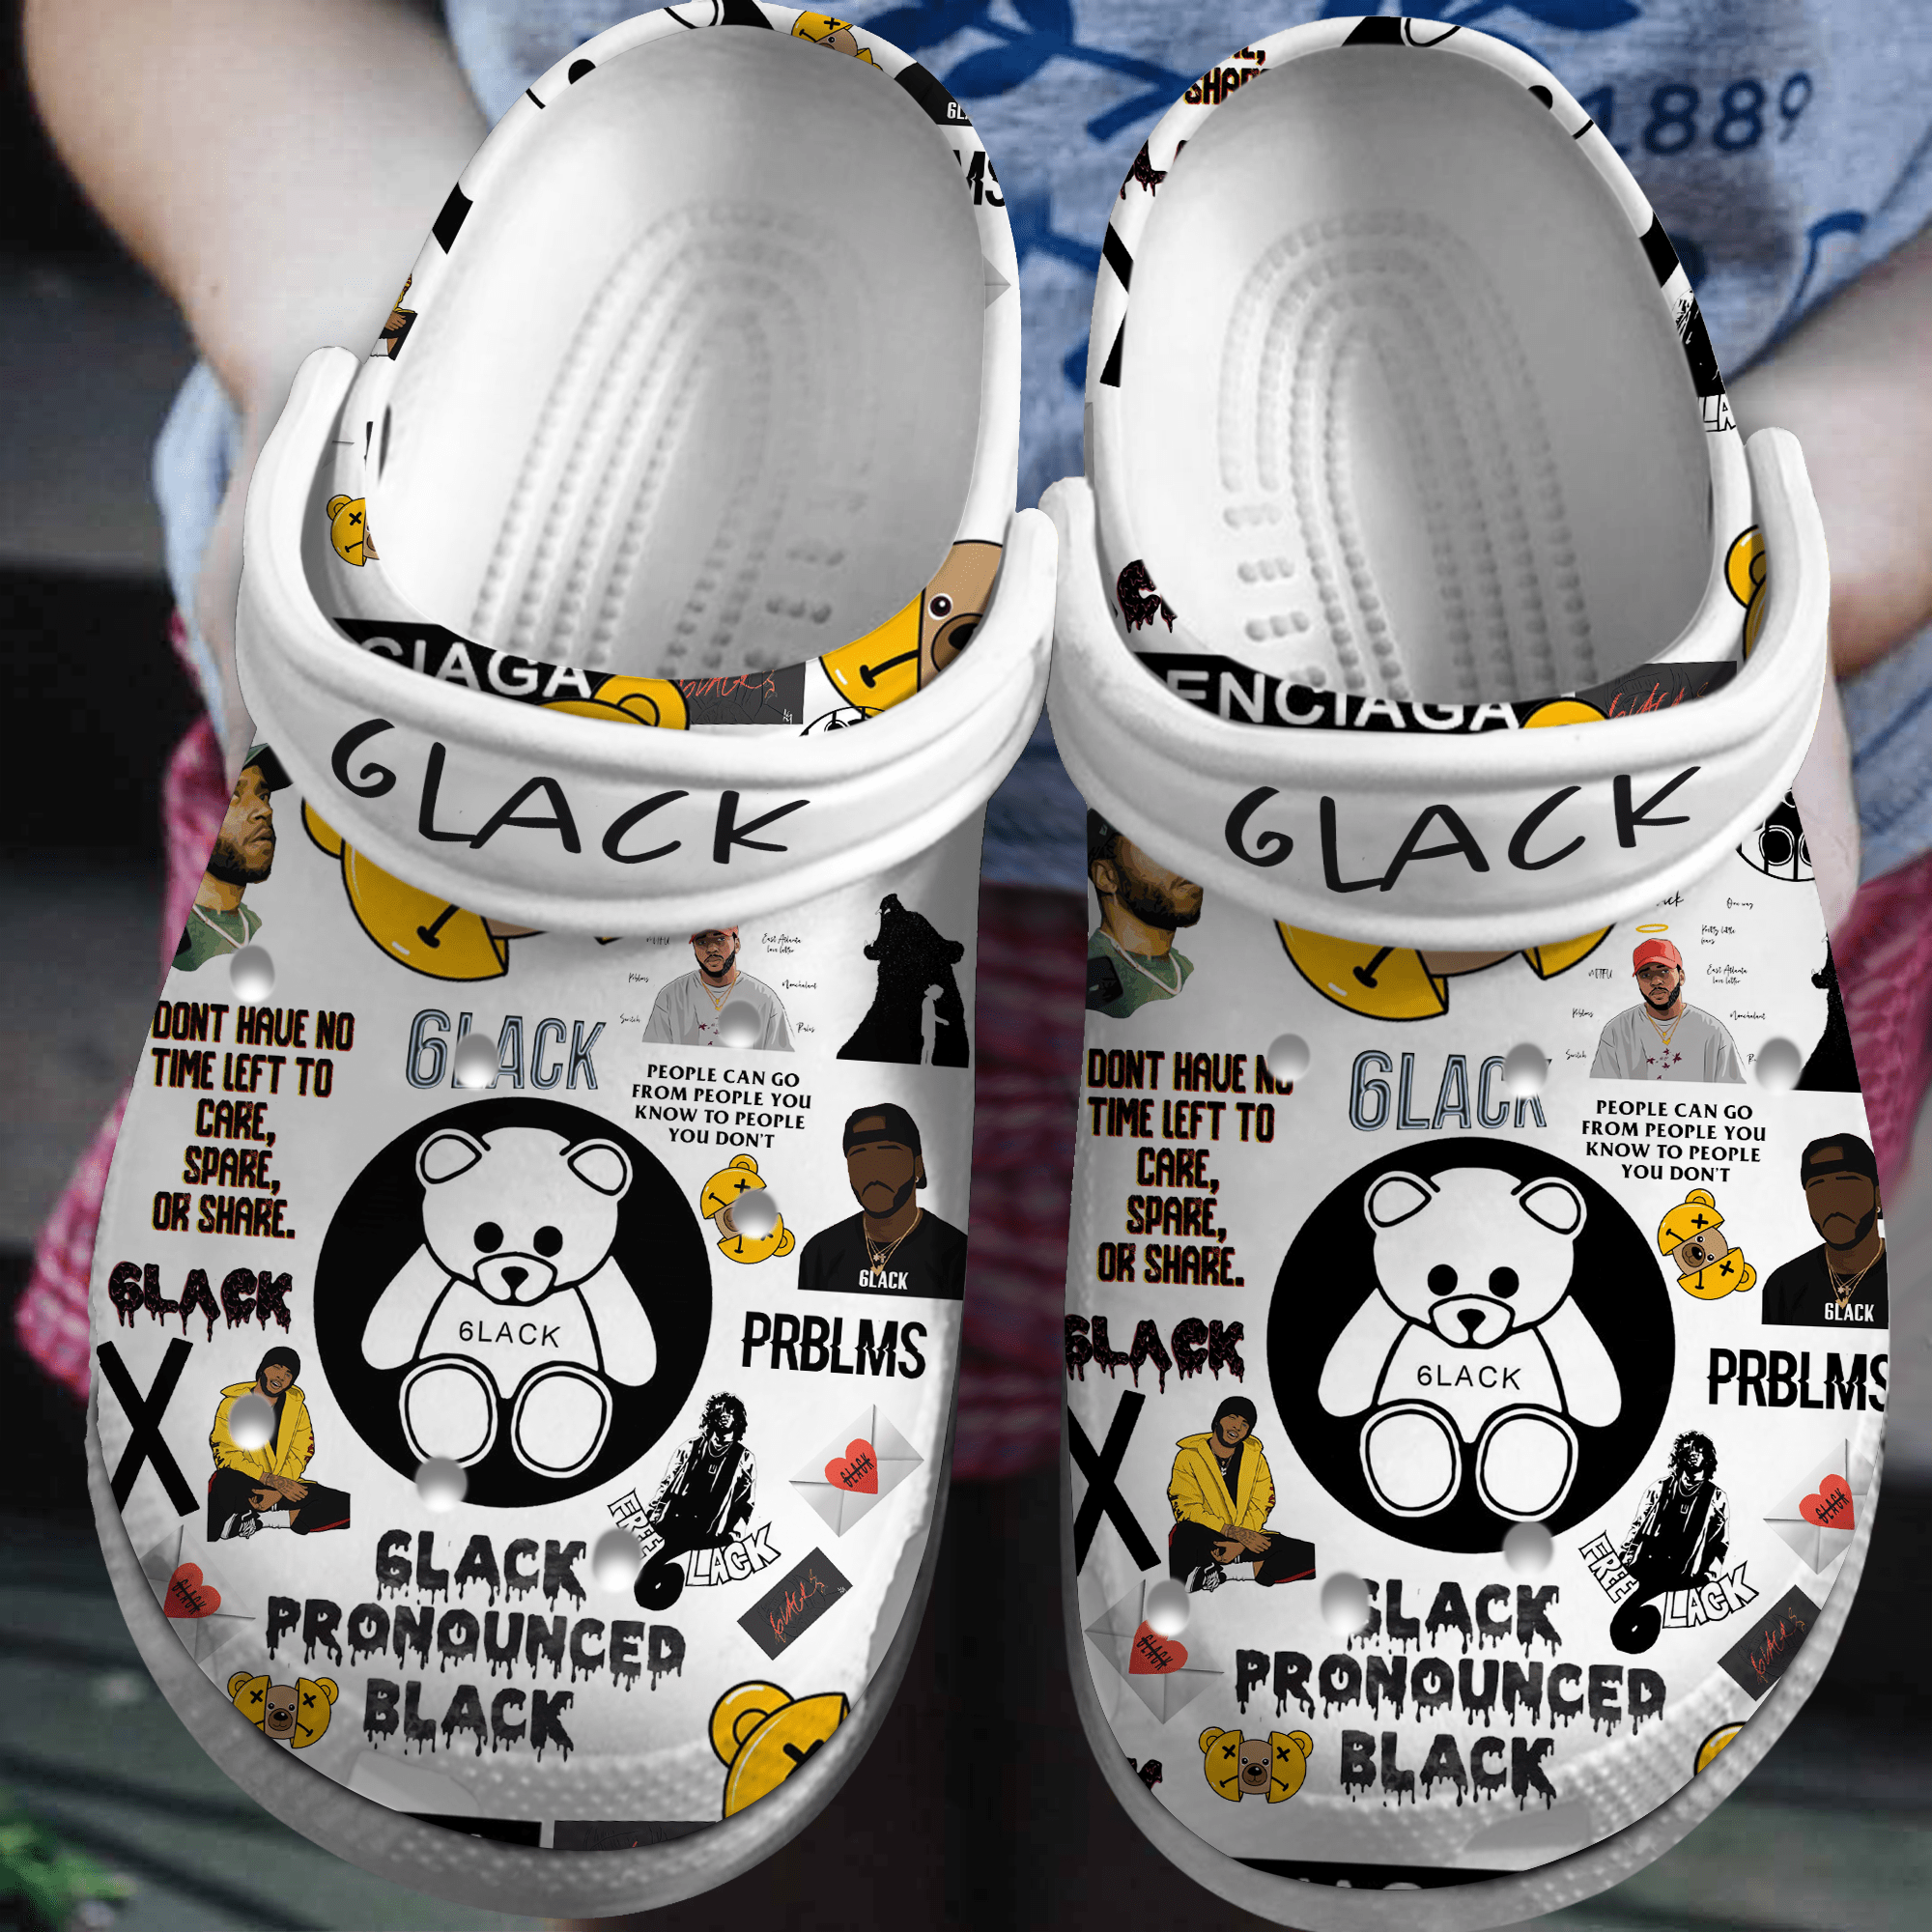 6lack Pronounced Black Music Crocs Crocband Clogs Shoes Comfortable For Men Women and Kids